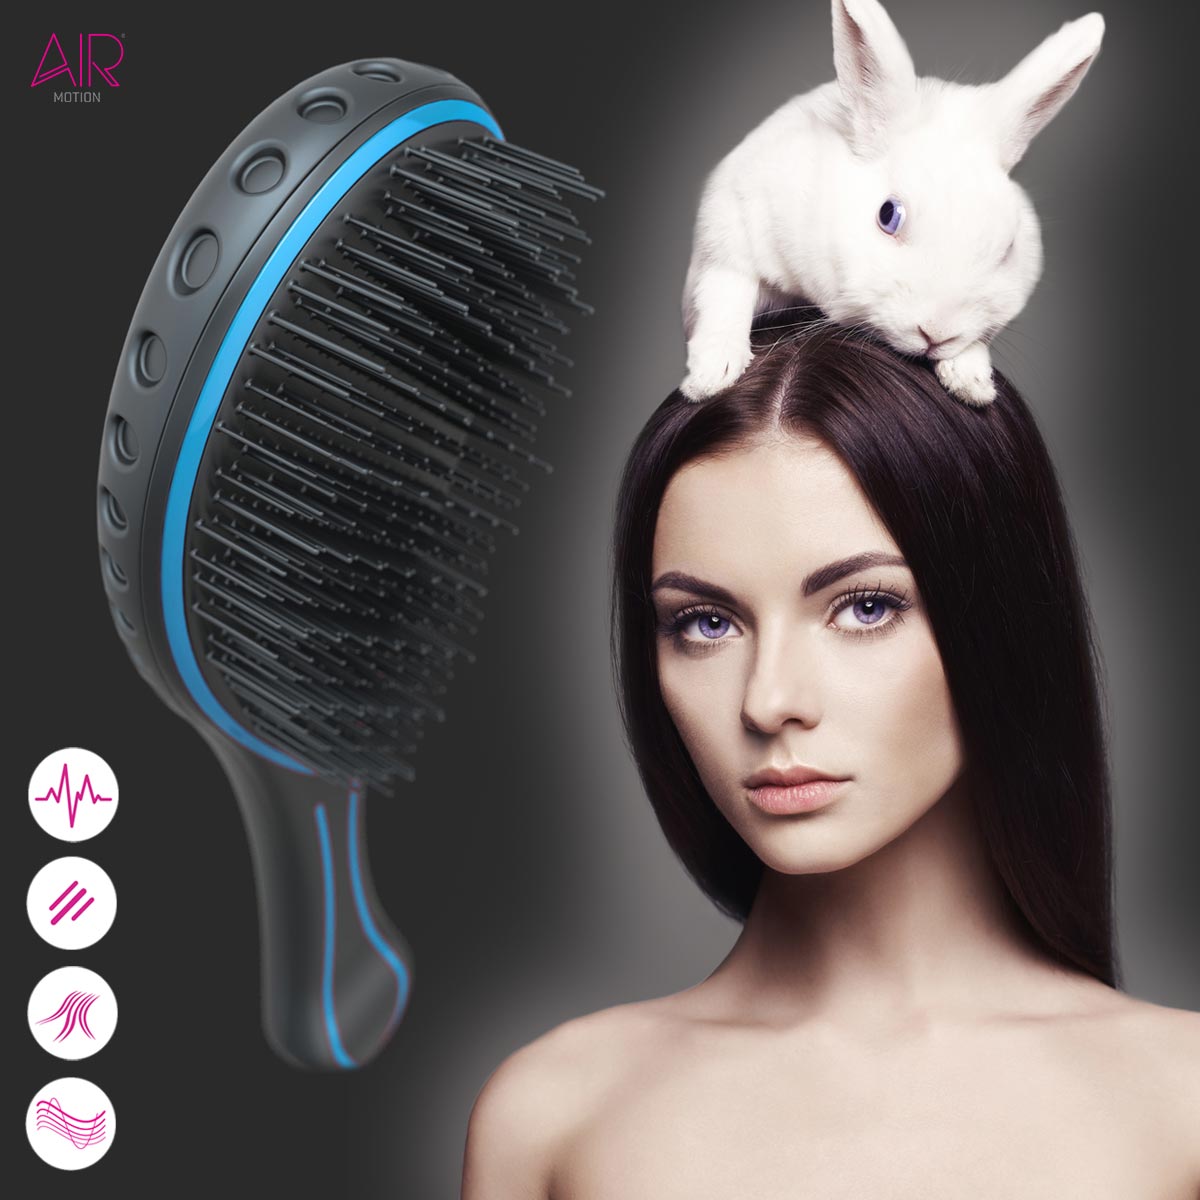 Značka AirMotion představuje nový kartáč na vlasy AirMotion Super-Soft vytvořený speciálně pro jemné a prodloužené vlasy.